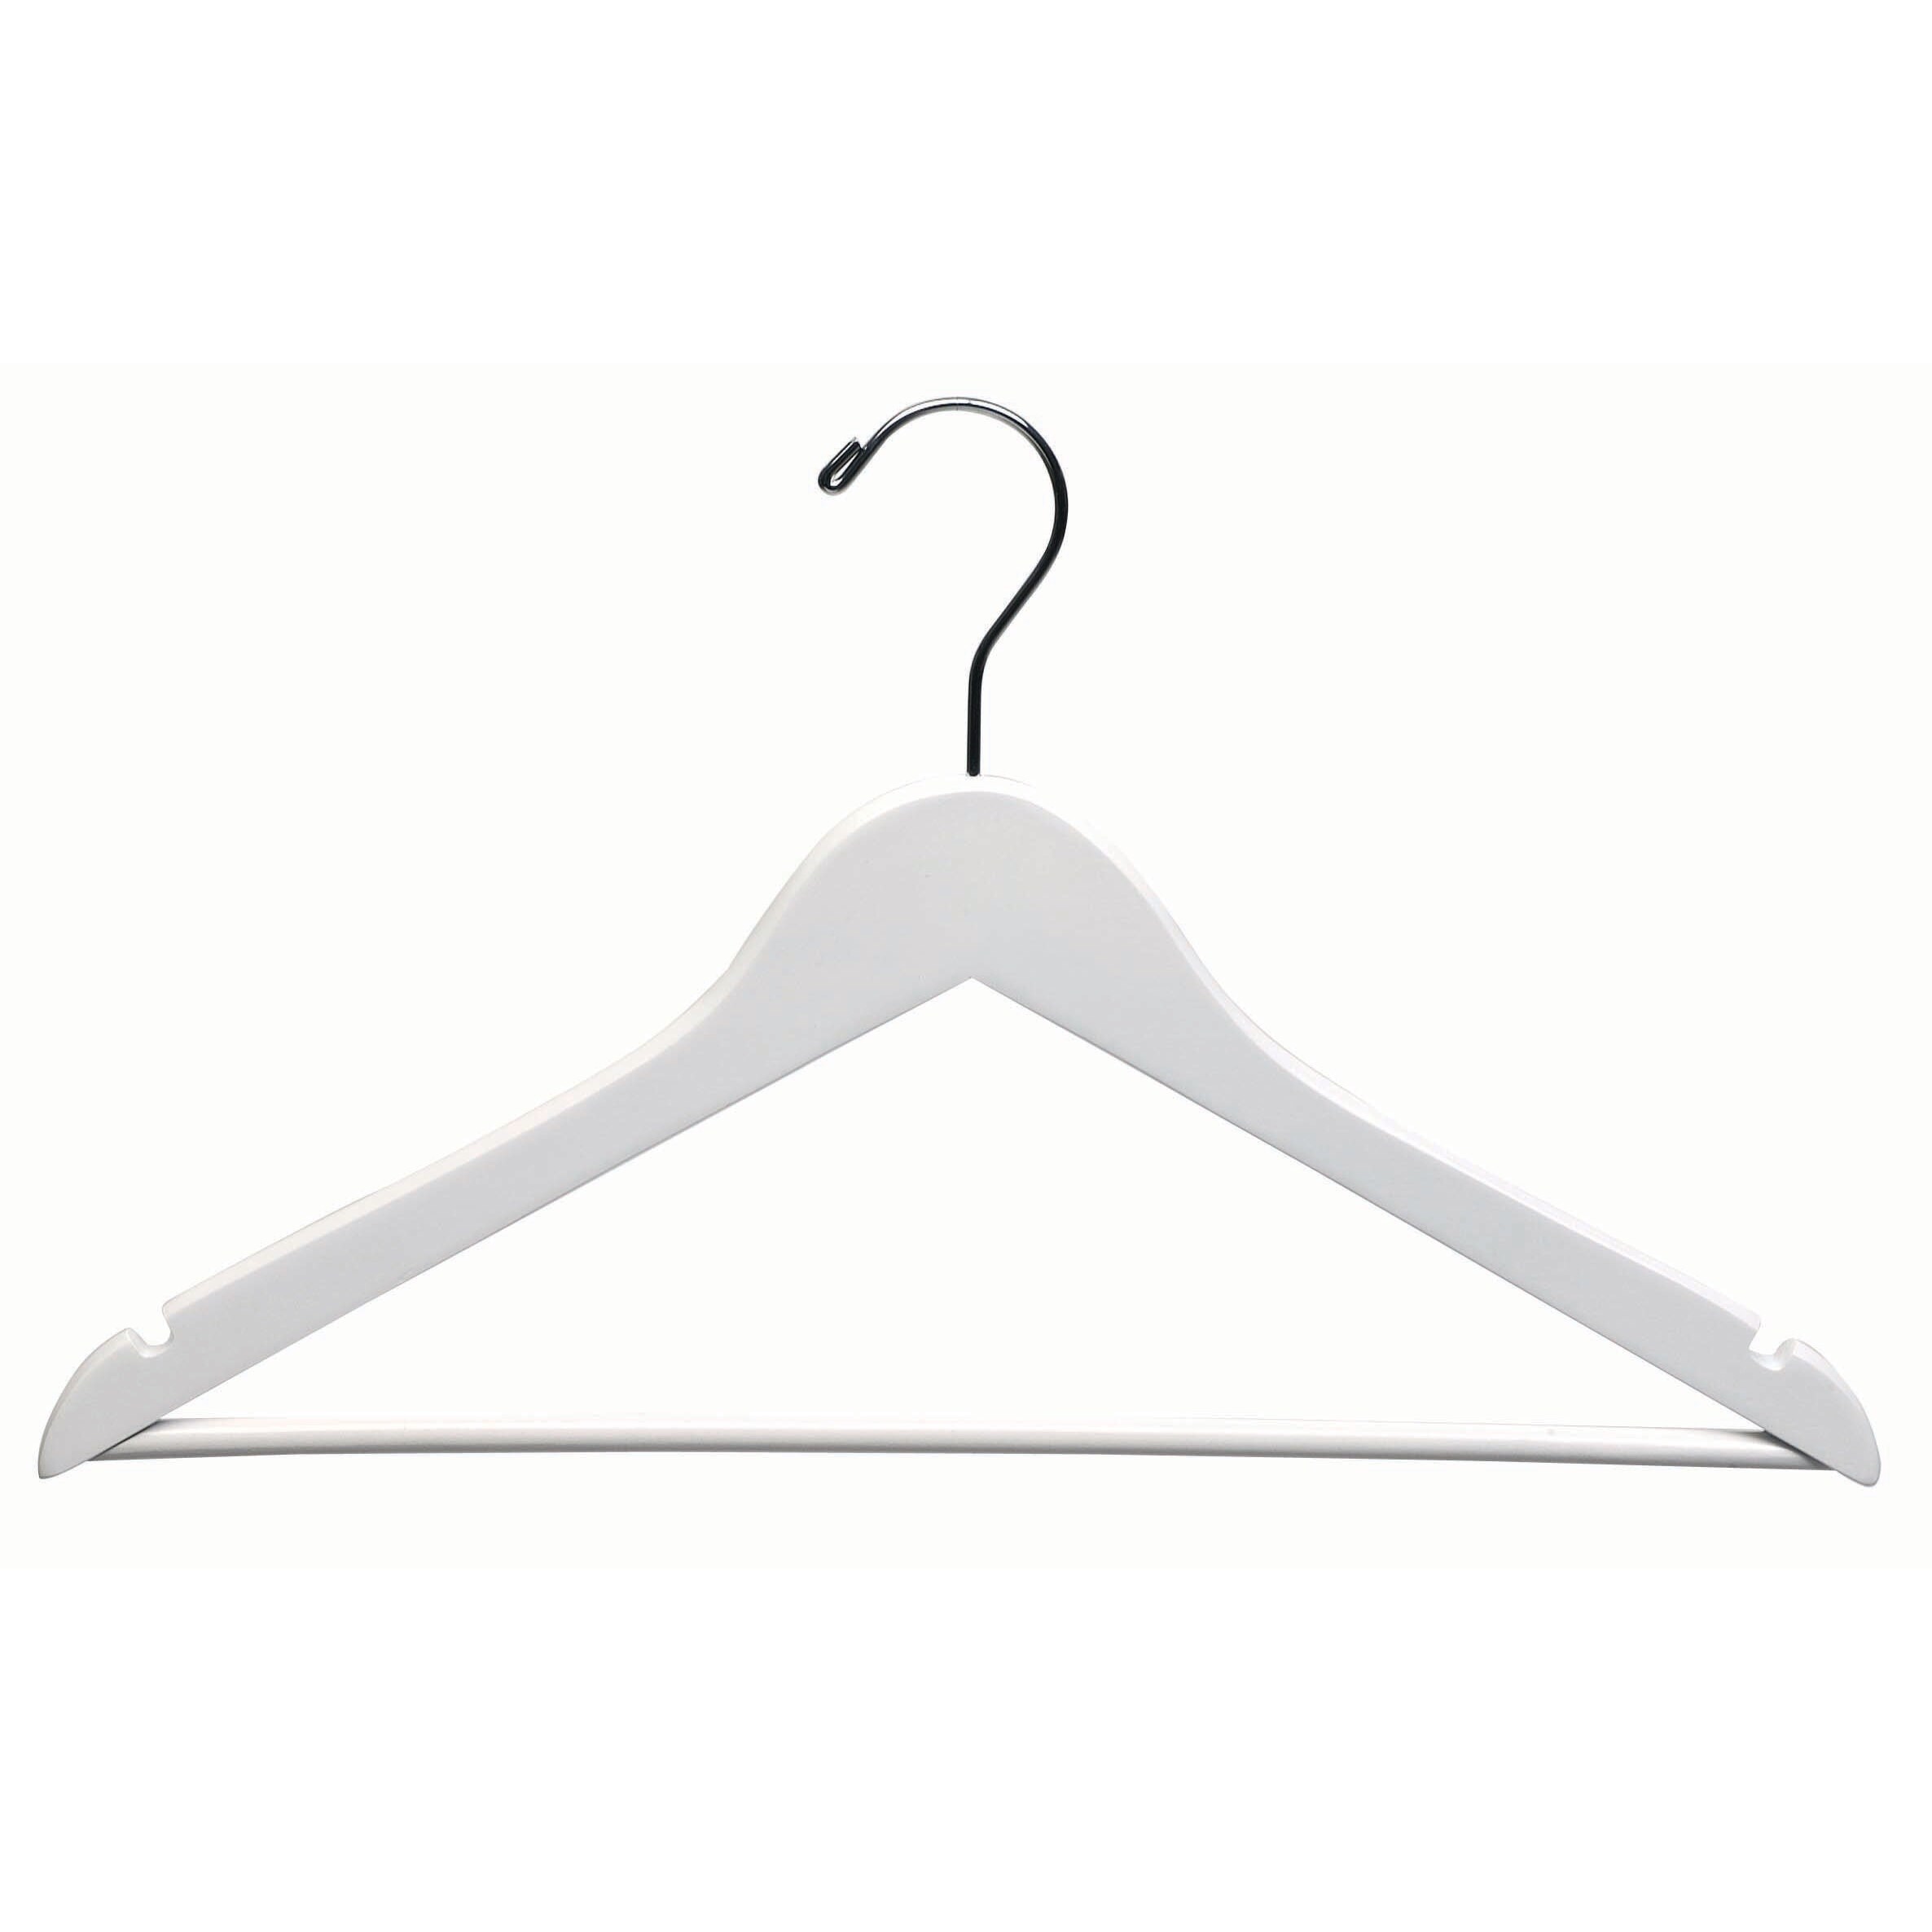 White Suit Hanger w/ Bar - Black & White Wood Hangers